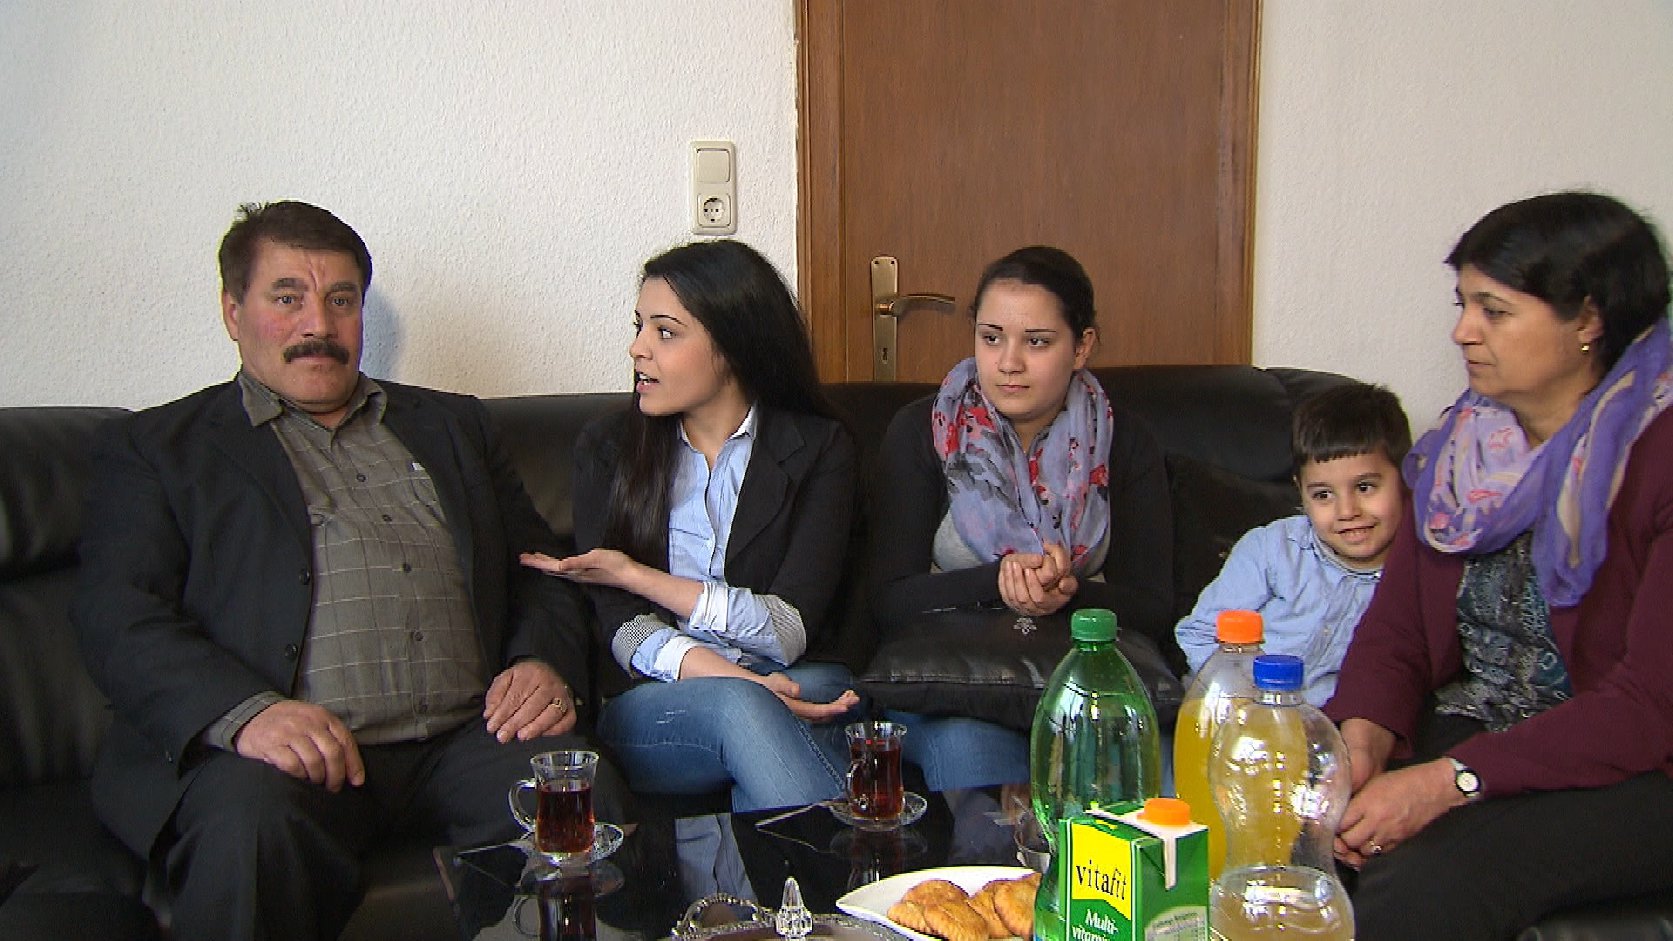 Paul Schwarz besuchte die jungen Migranten auch zuhause: Nadia im Kreise ihrer Familie. Quelle: Paul Schwarz